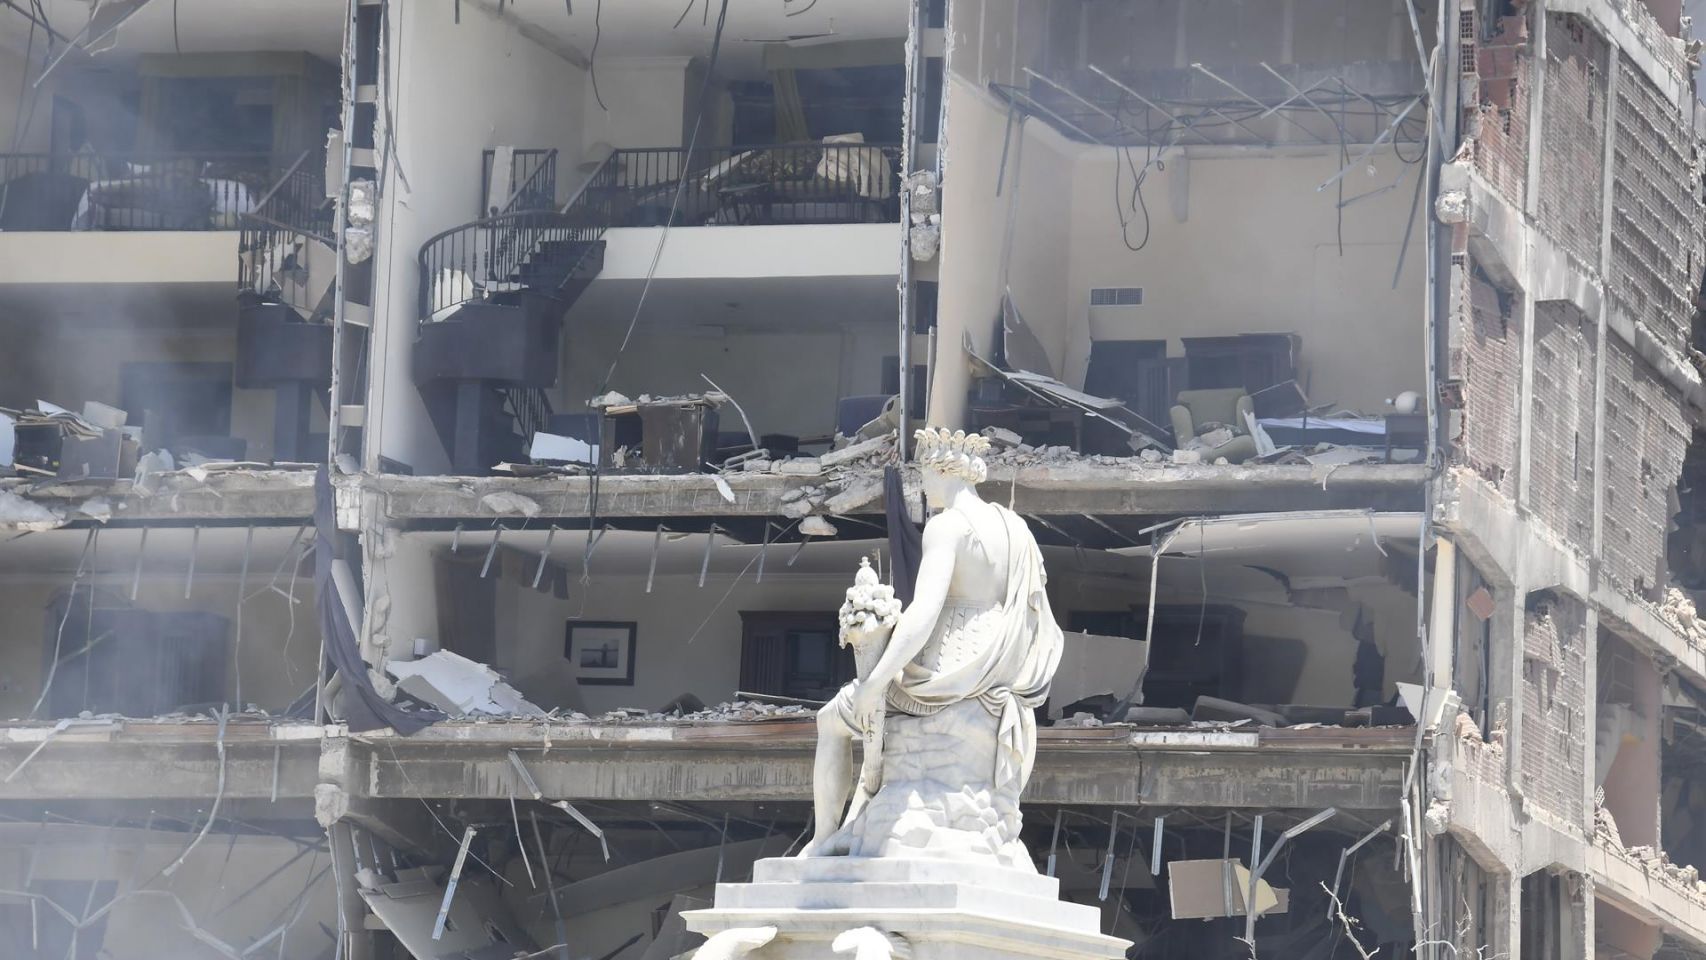 Daños provocados por una explosión en el Hotel Saratoga de La Habana.